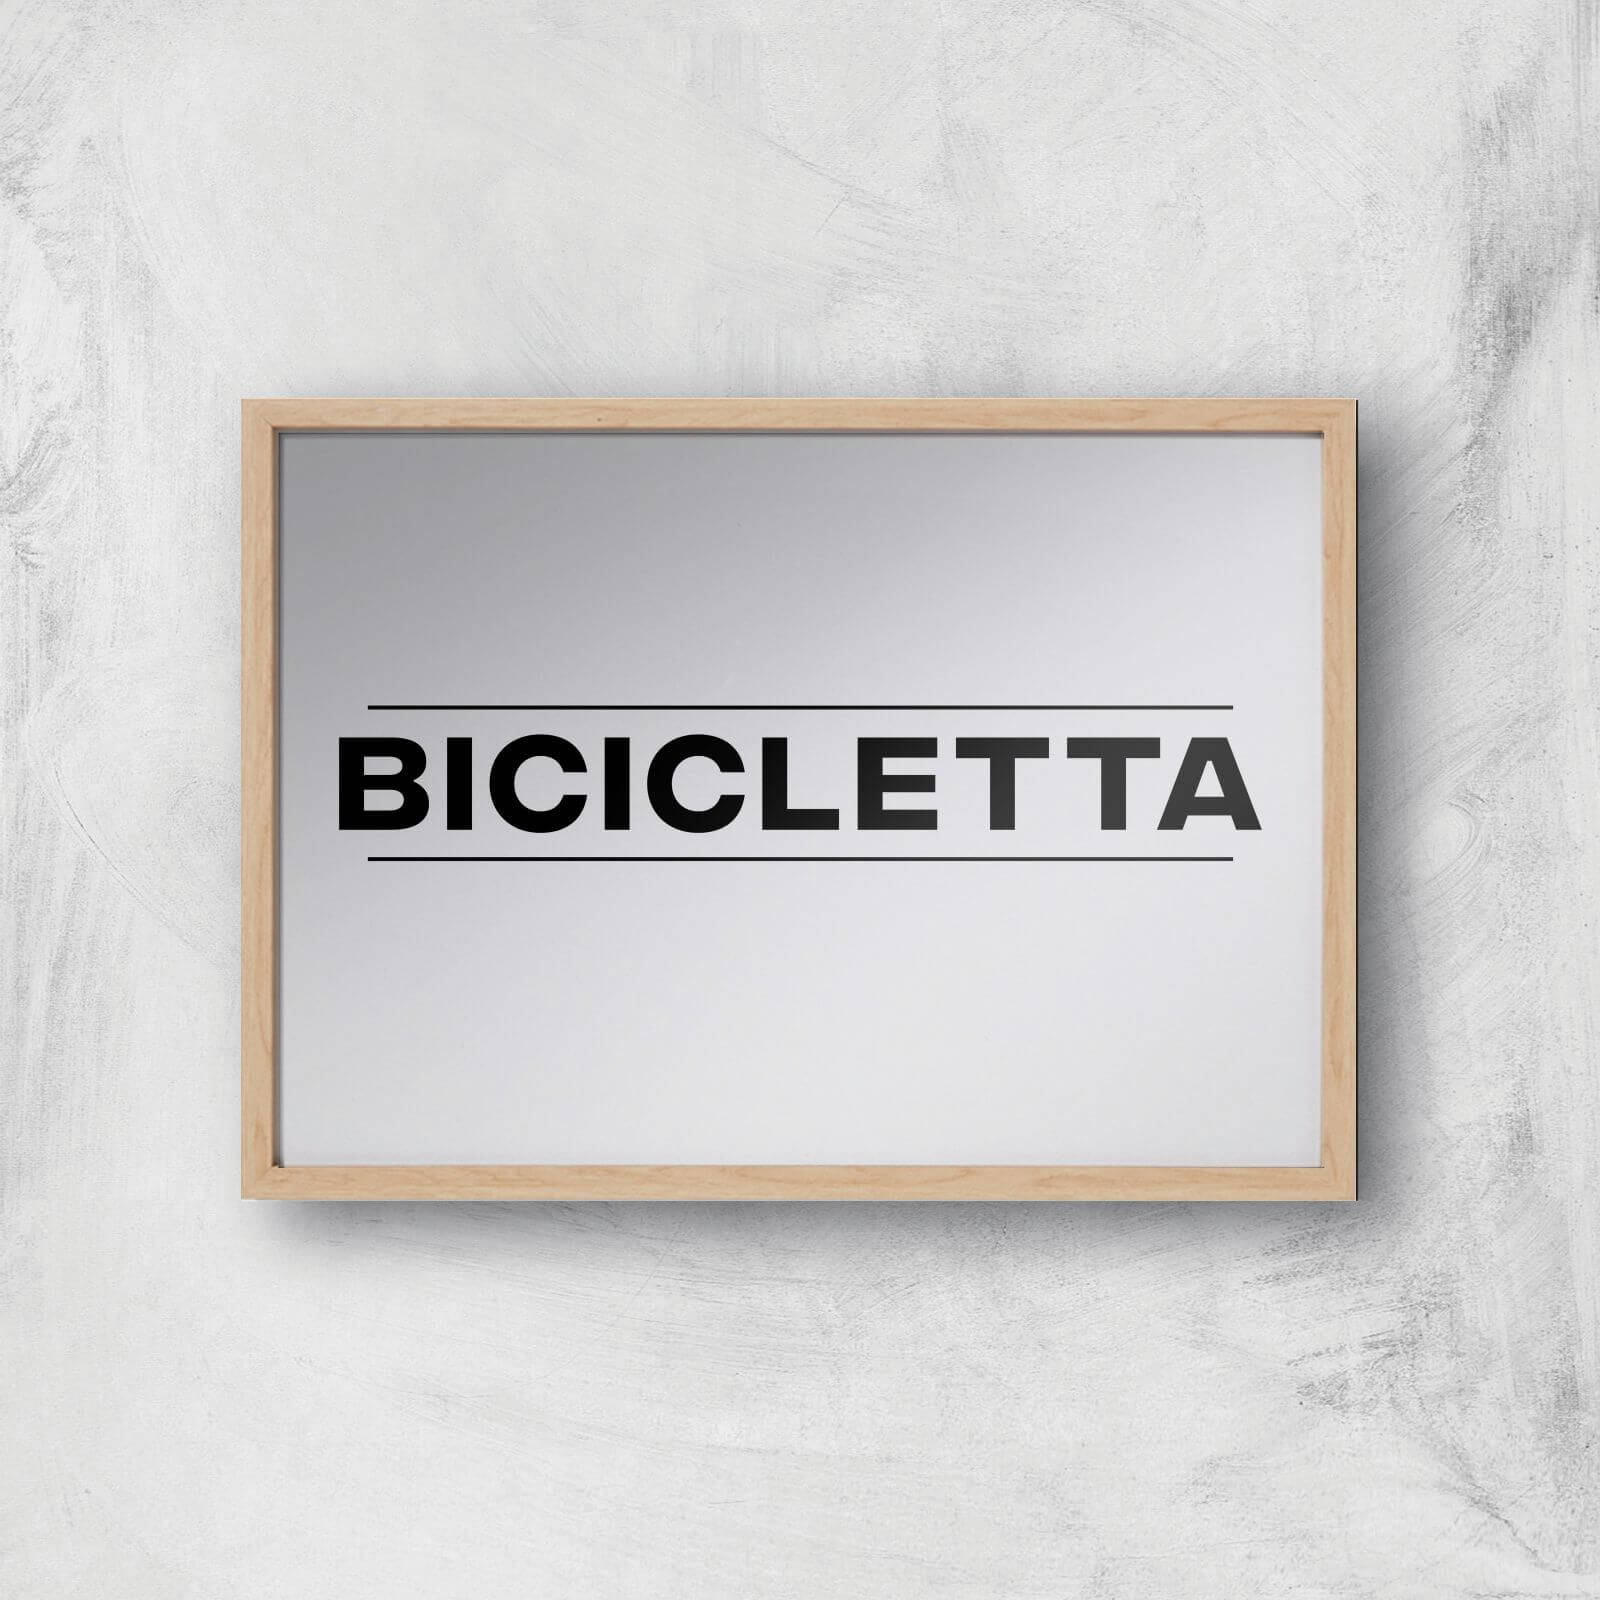 PBK Bicicletta Giclee Art Print - A2 - Wooden Frame